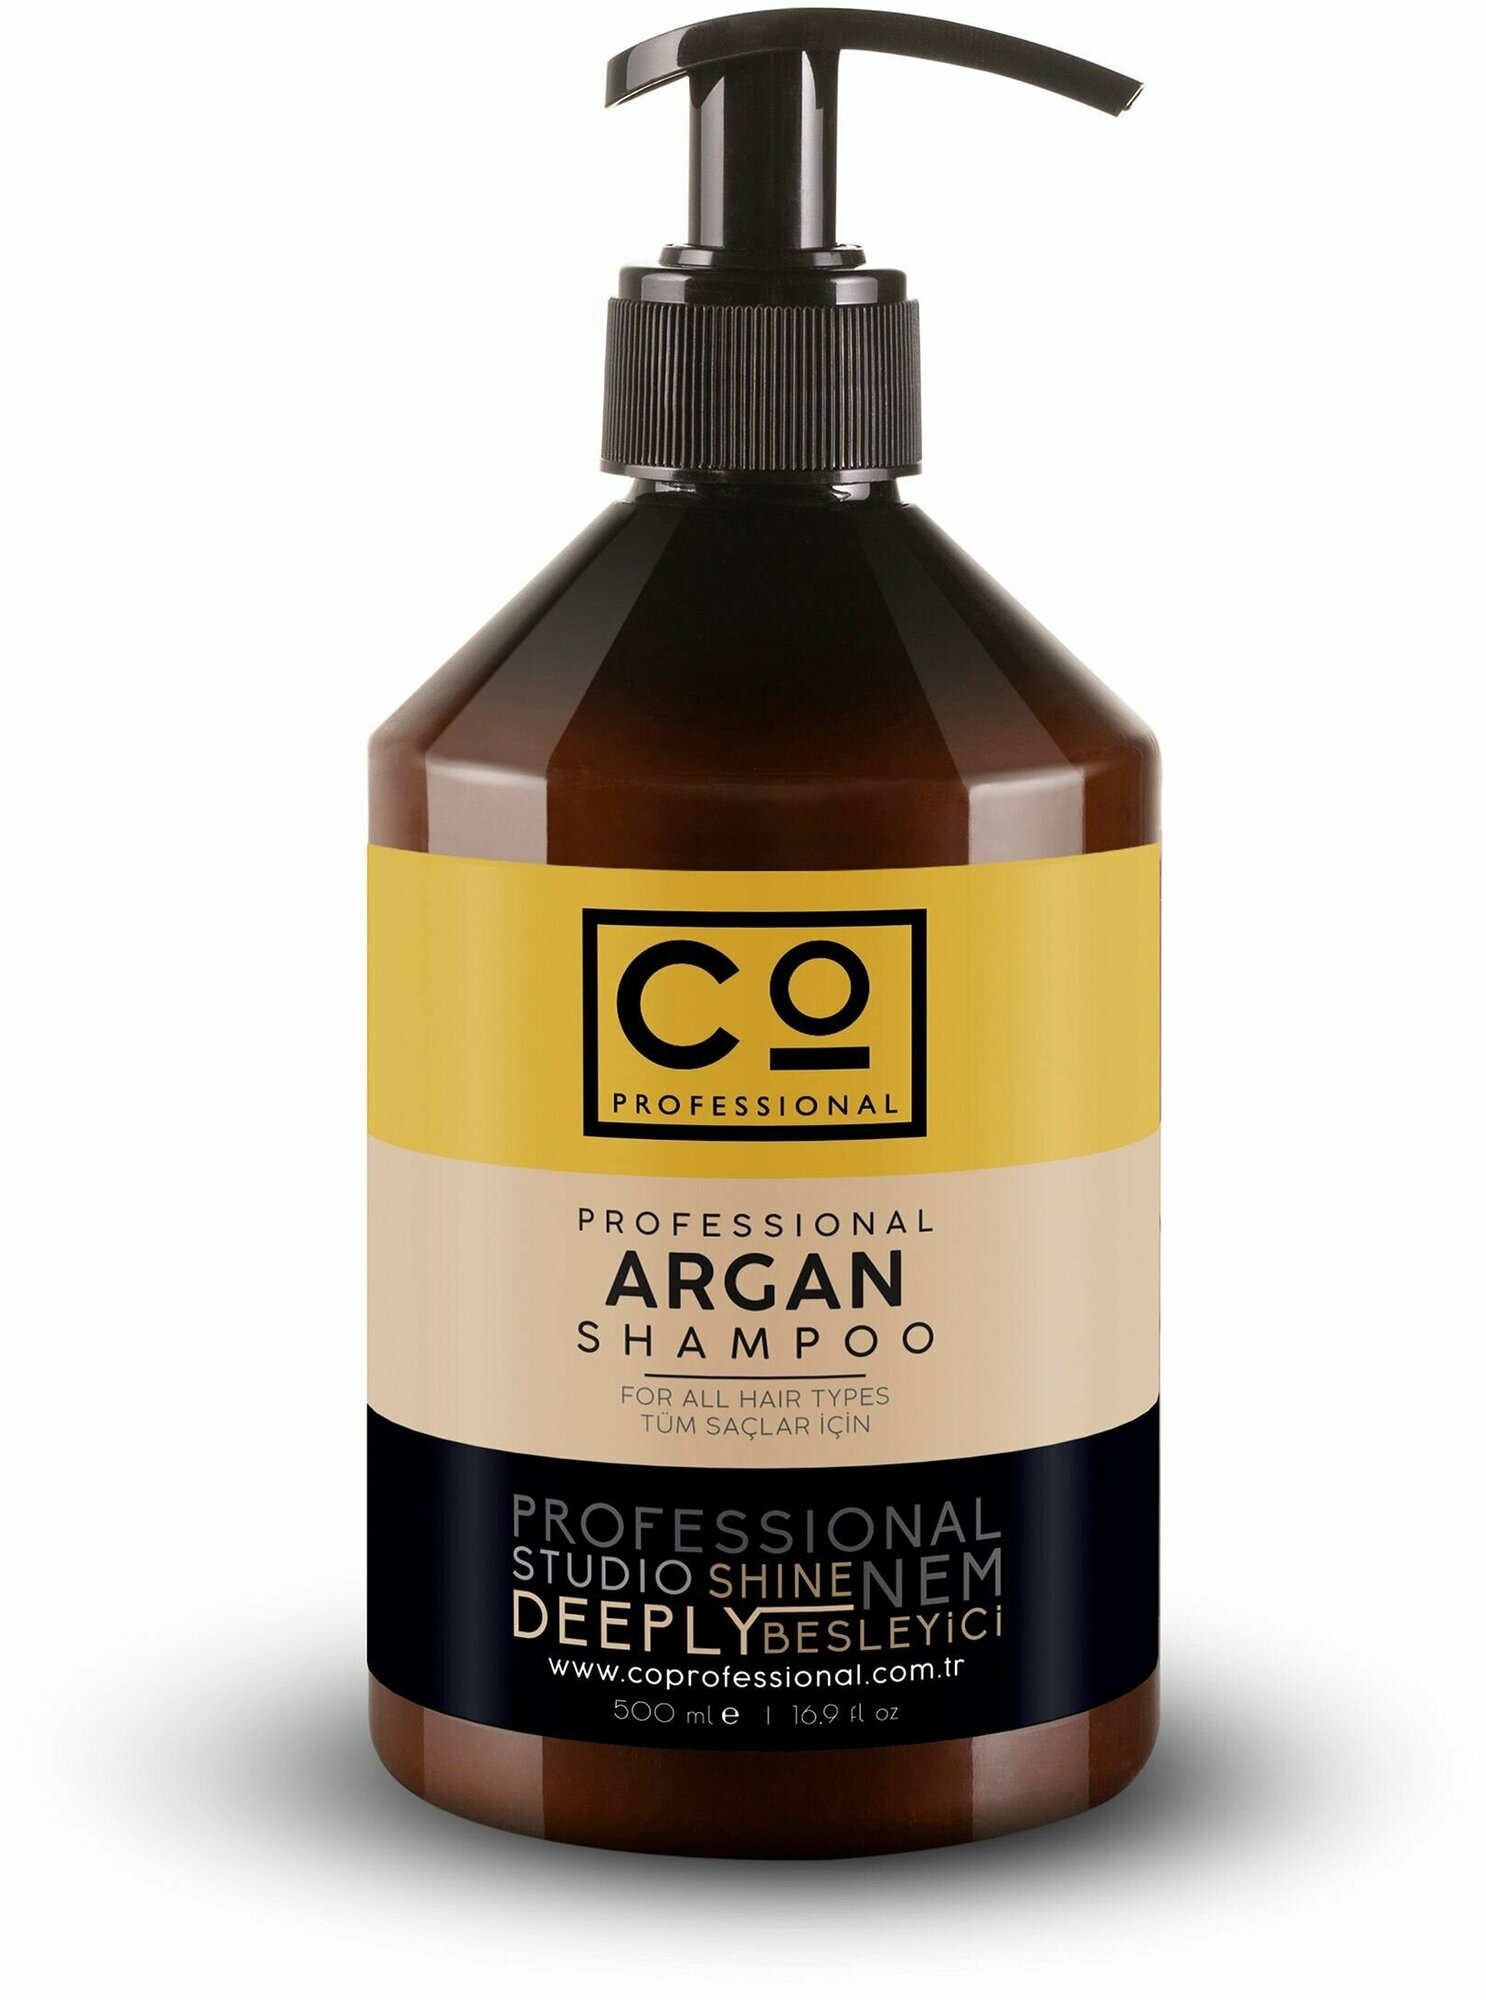 Шампунь с аргановым маслом CO PROFESSIONAL Argan Shampoo, 500 мл